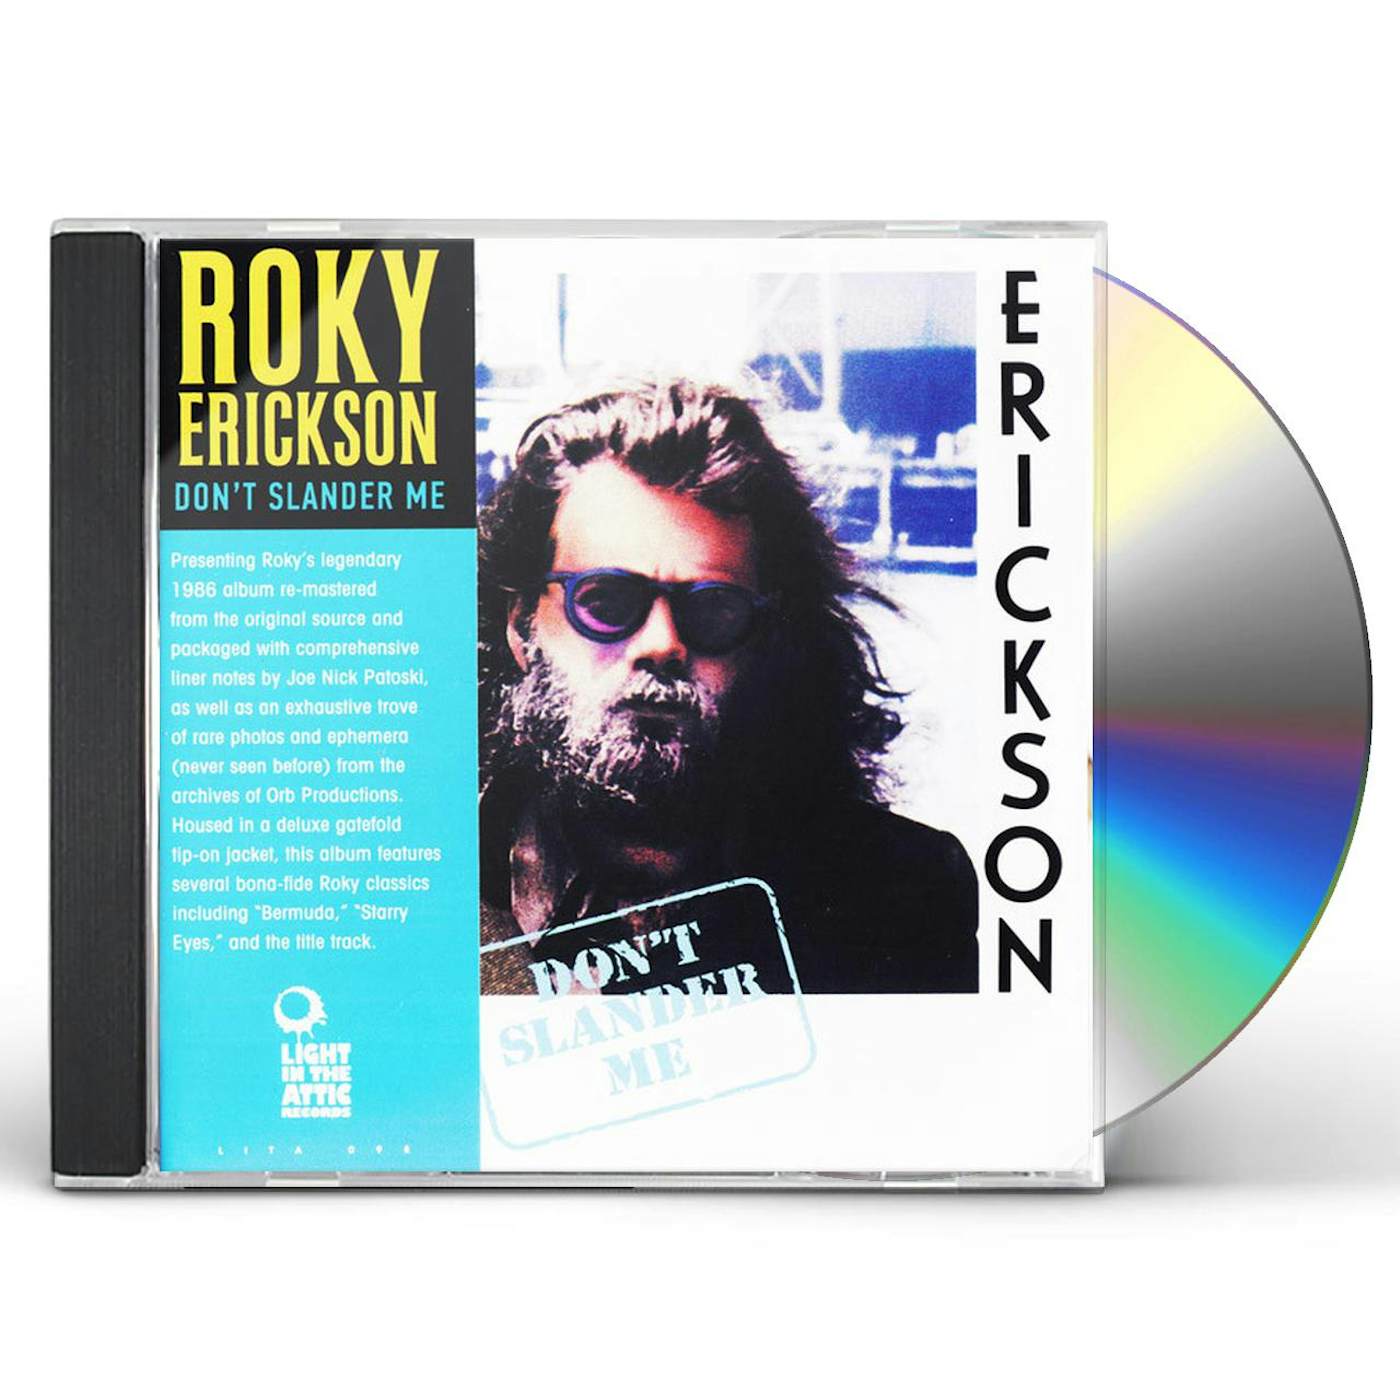 Roky Erickson DON'T SLANDER ME CD